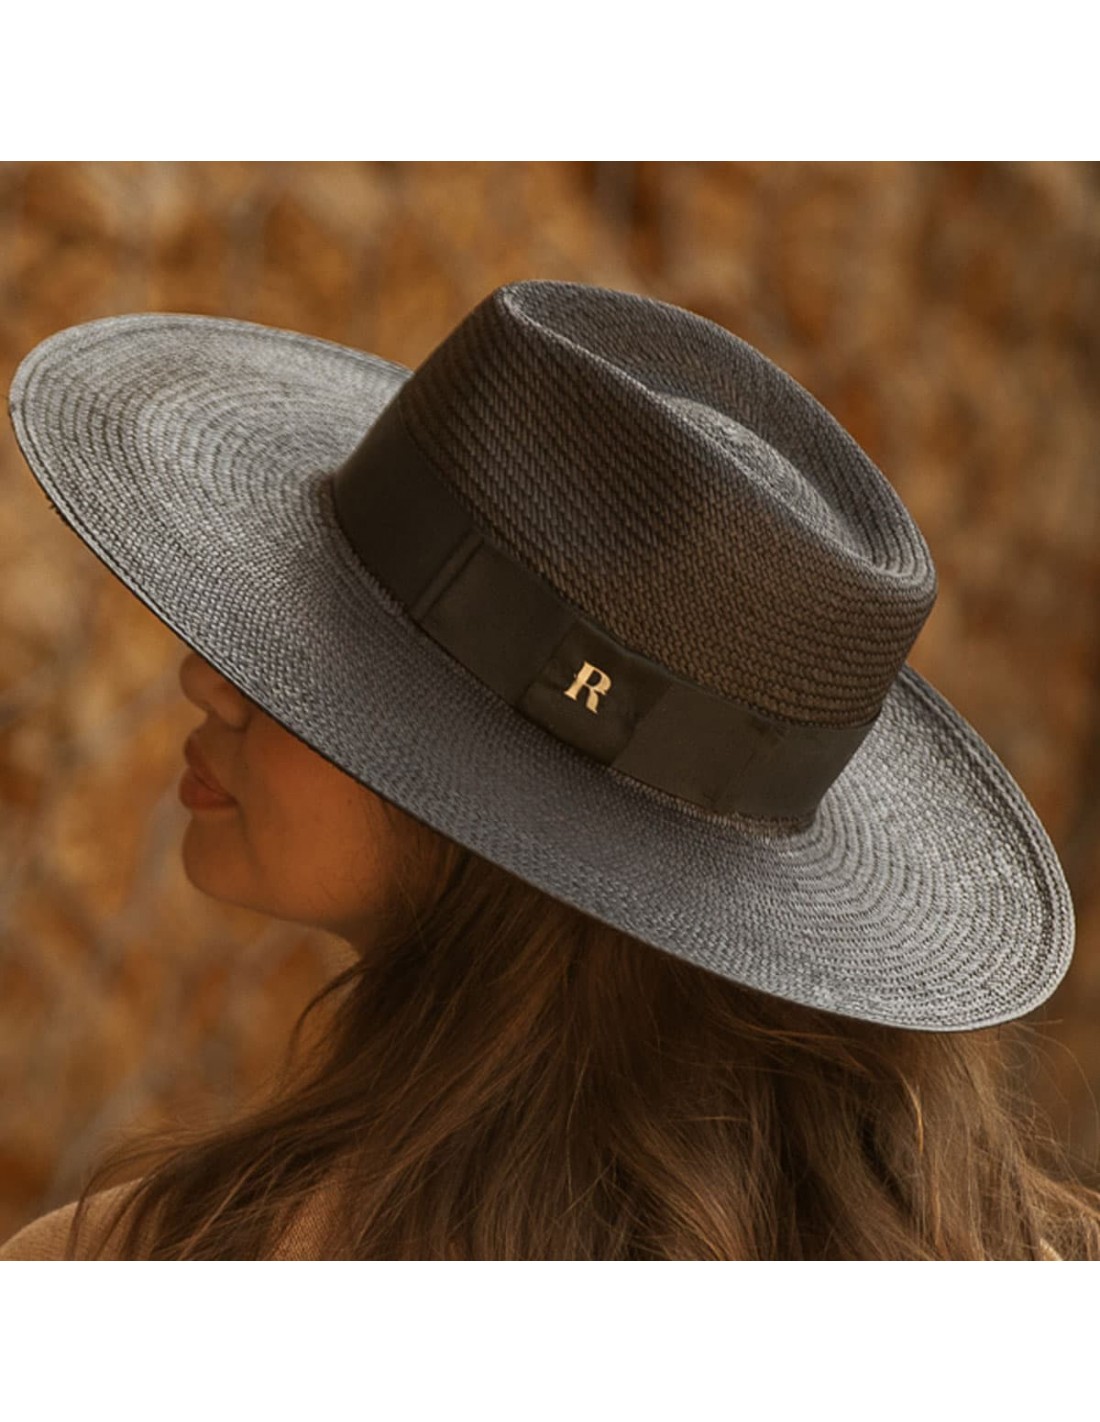 Sombrero cowboy clásico Dallas de fieltro negro con cinta decorativa